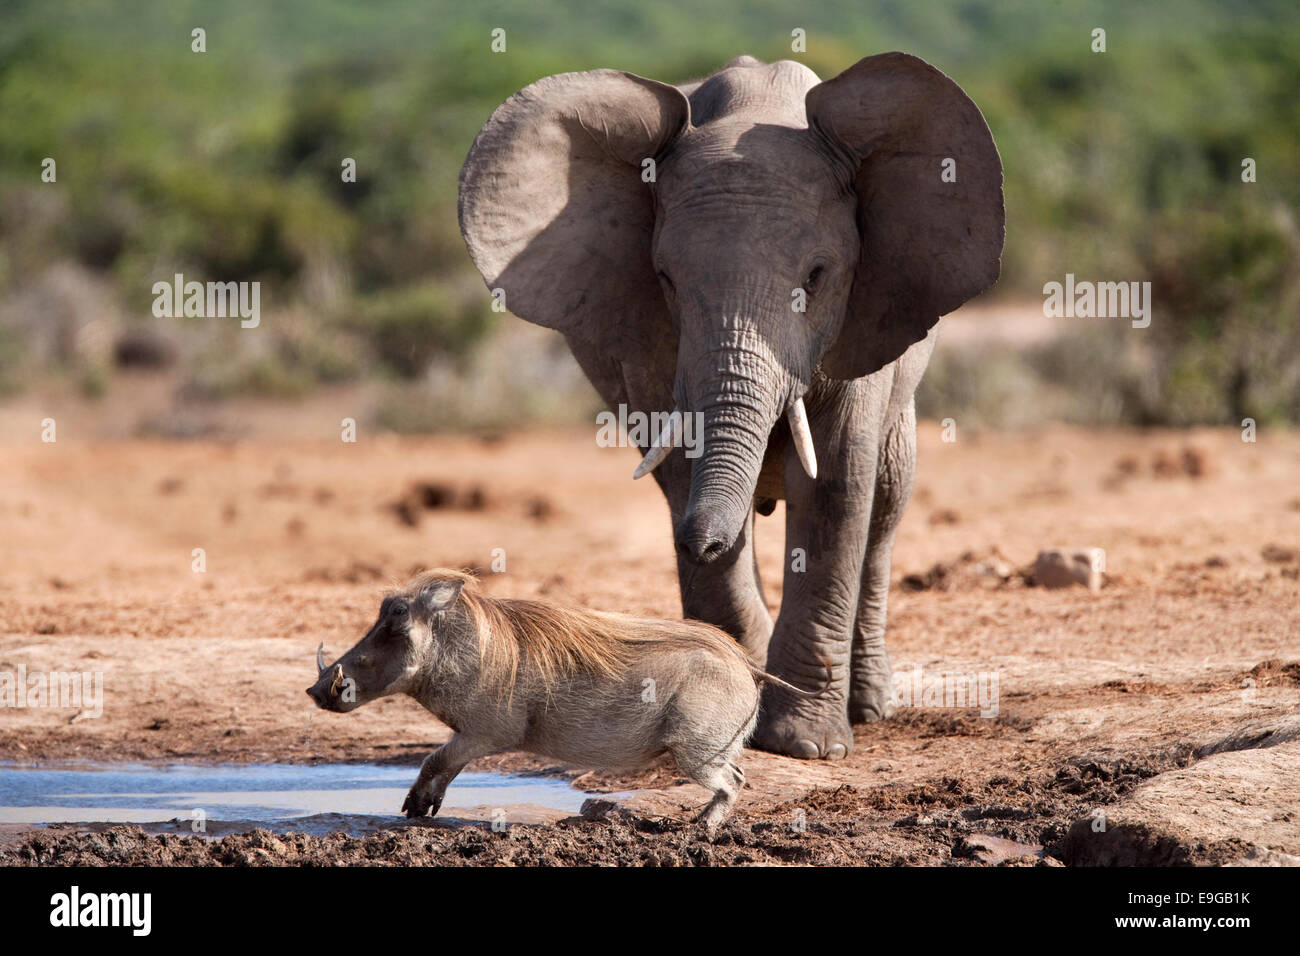 African elephant, Loxodonta africana, chasing warthog, Addo Elephant National Park, South Africa Stock Photo